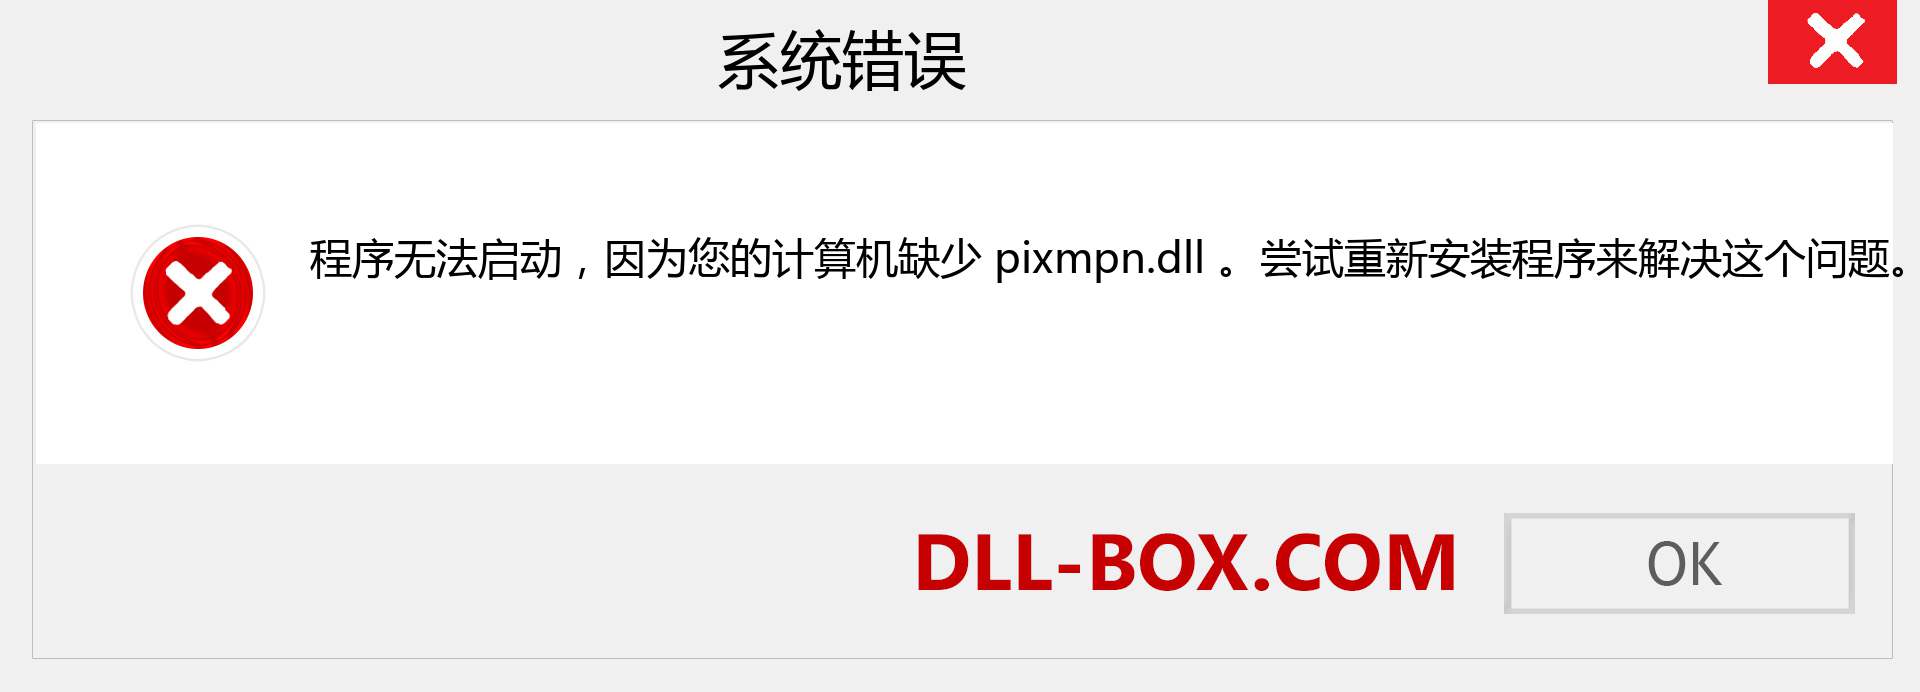 pixmpn.dll 文件丢失？。 适用于 Windows 7、8、10 的下载 - 修复 Windows、照片、图像上的 pixmpn dll 丢失错误